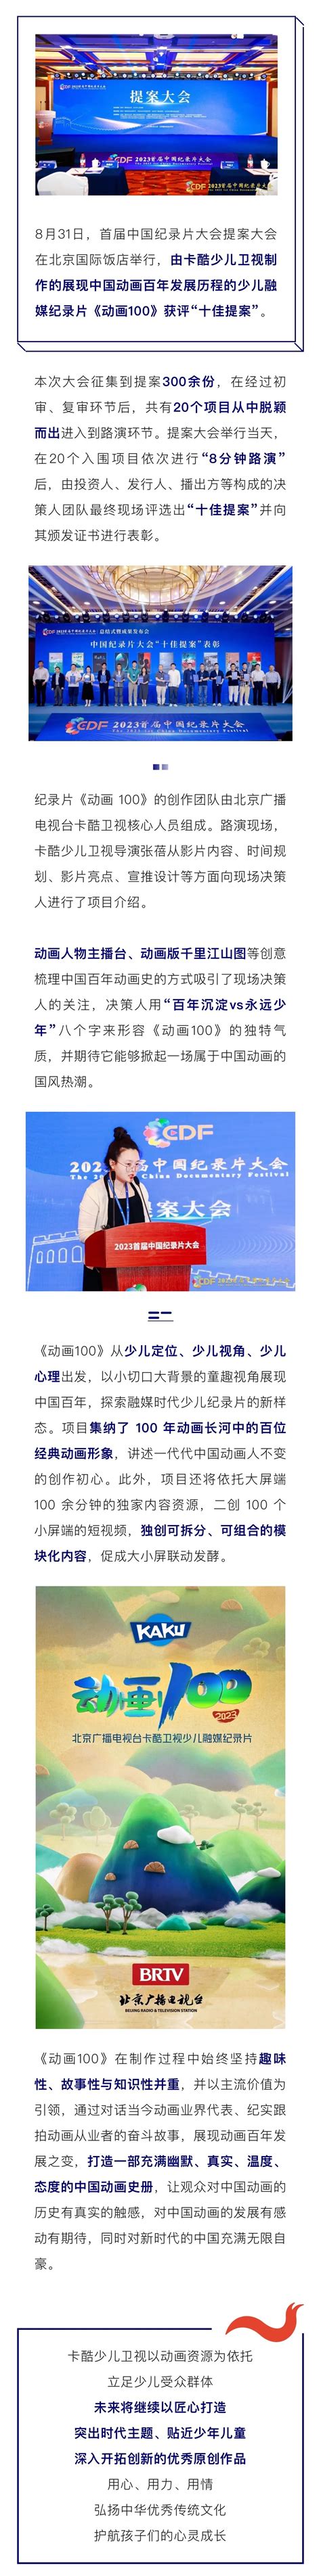 北京电视台卡酷少儿频道 - 快懂百科